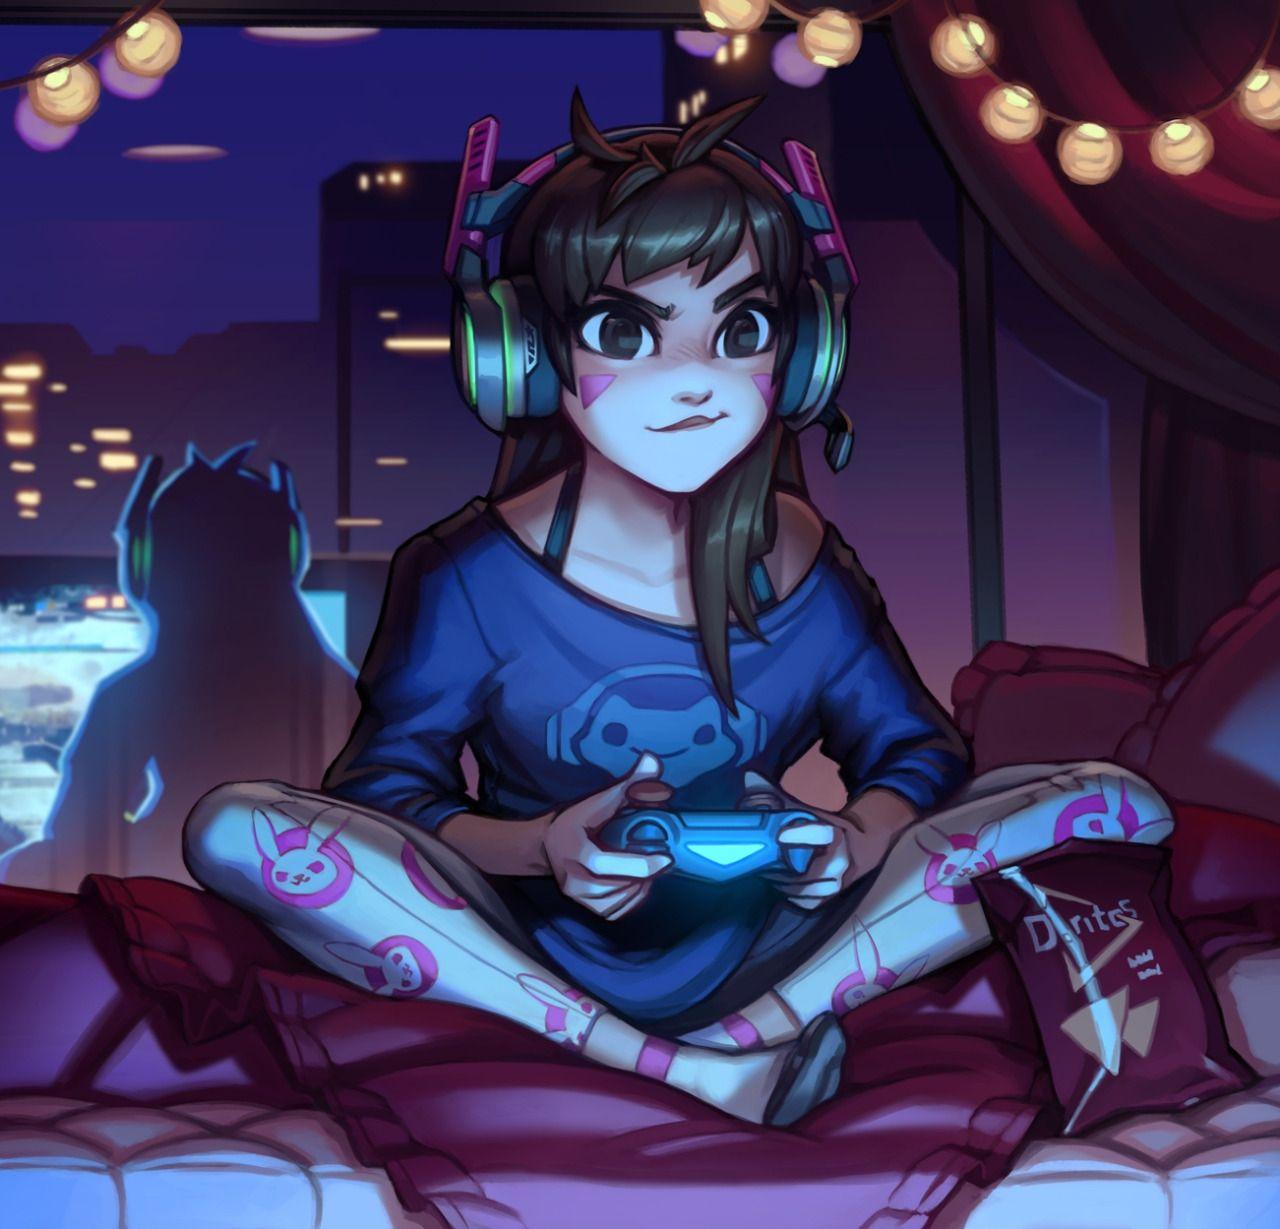 thecomicninja: “Gamer Girl by Kienan Lafferty ”. Overwatch fan